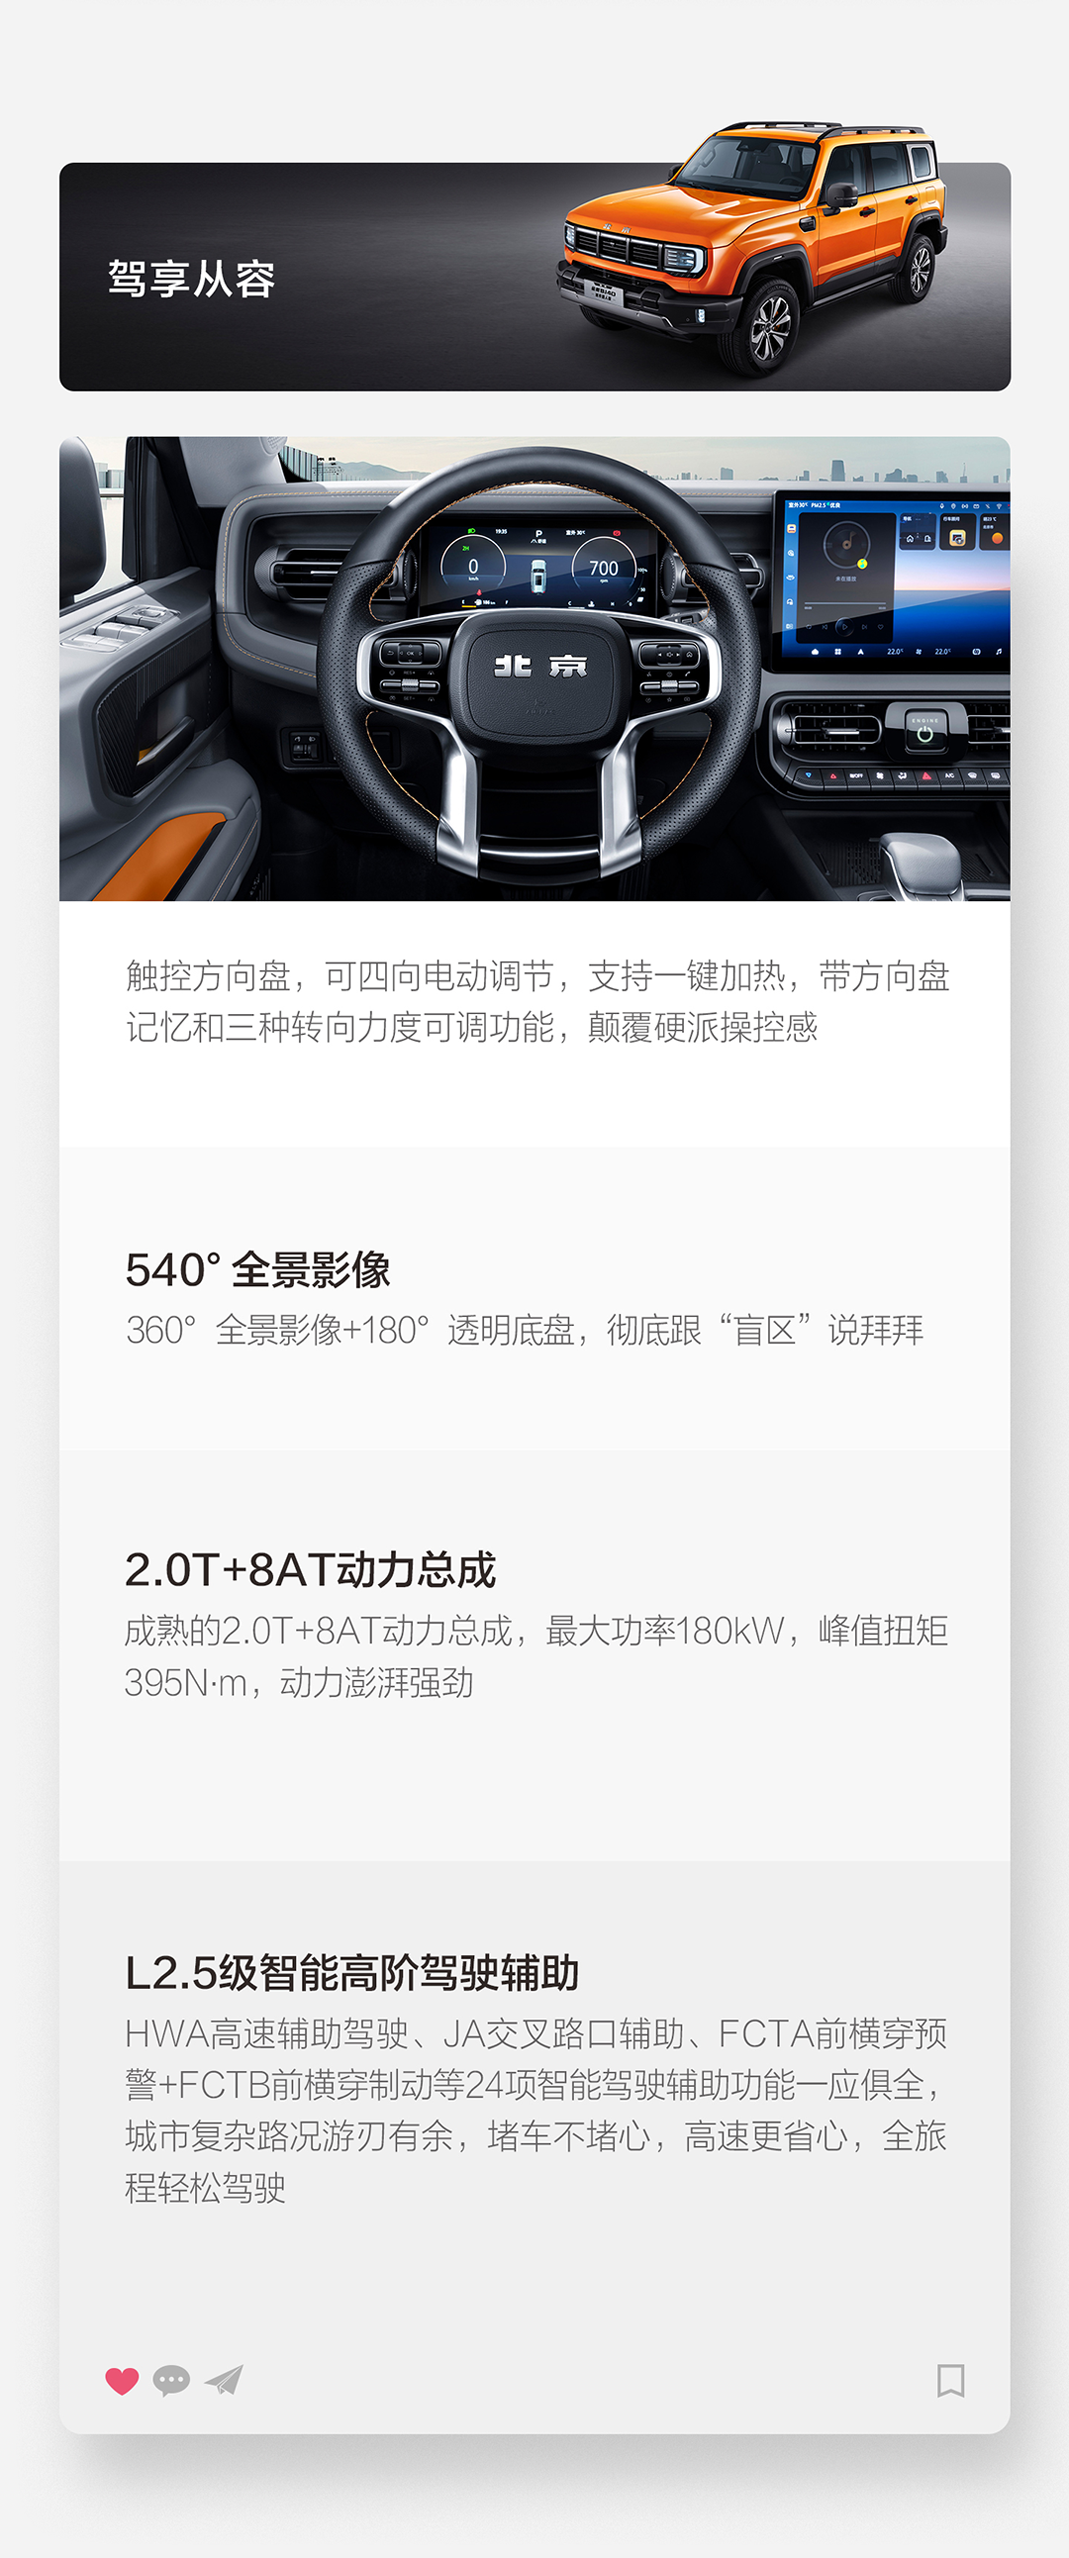 全新北京BJ40正式开启预售，18.58万-22.58万元